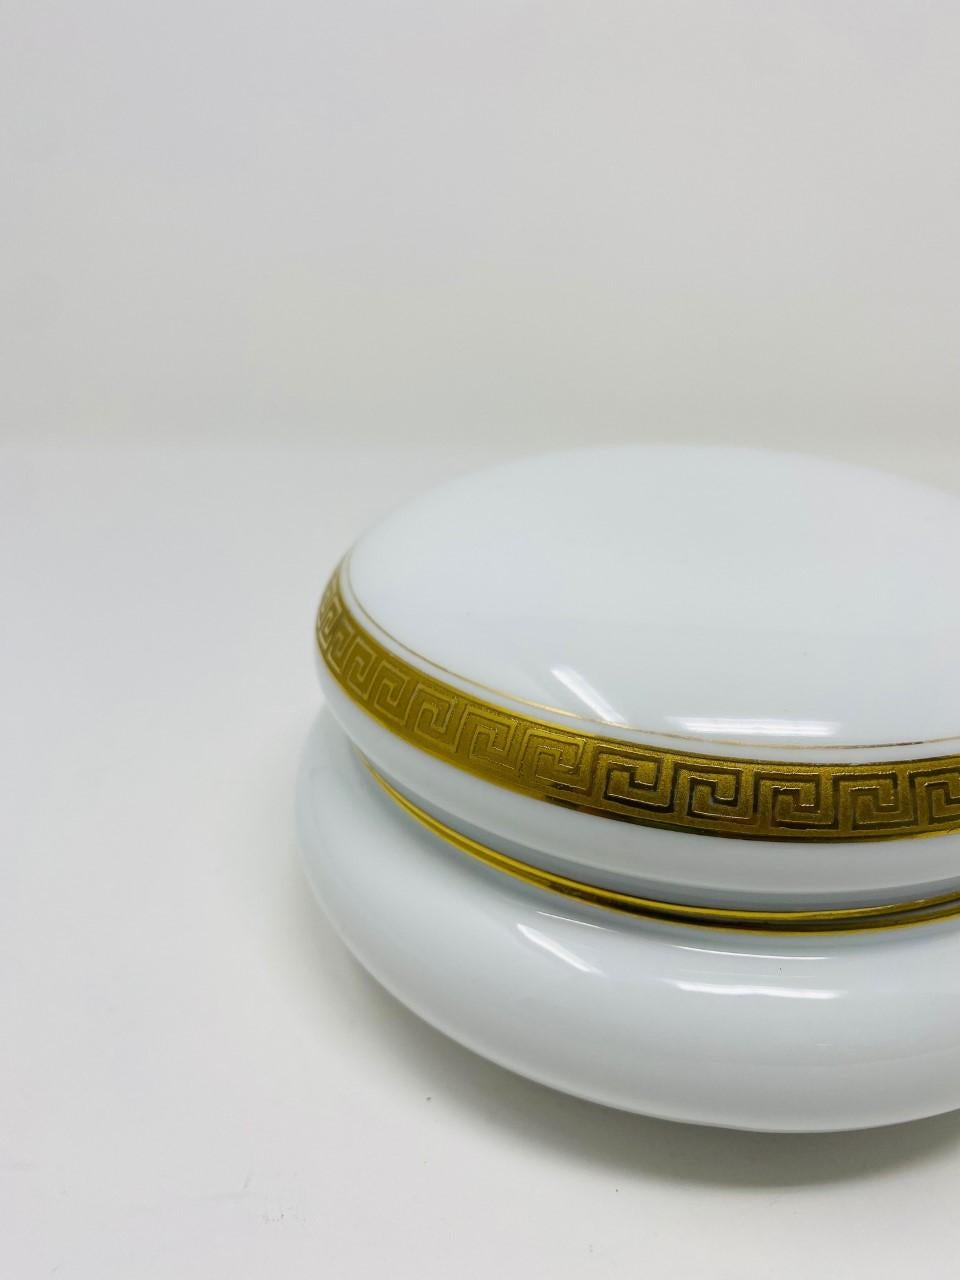 Vintage Porcelain Greek Key Jar with Lid by Royal Bayreuth For Sale 4